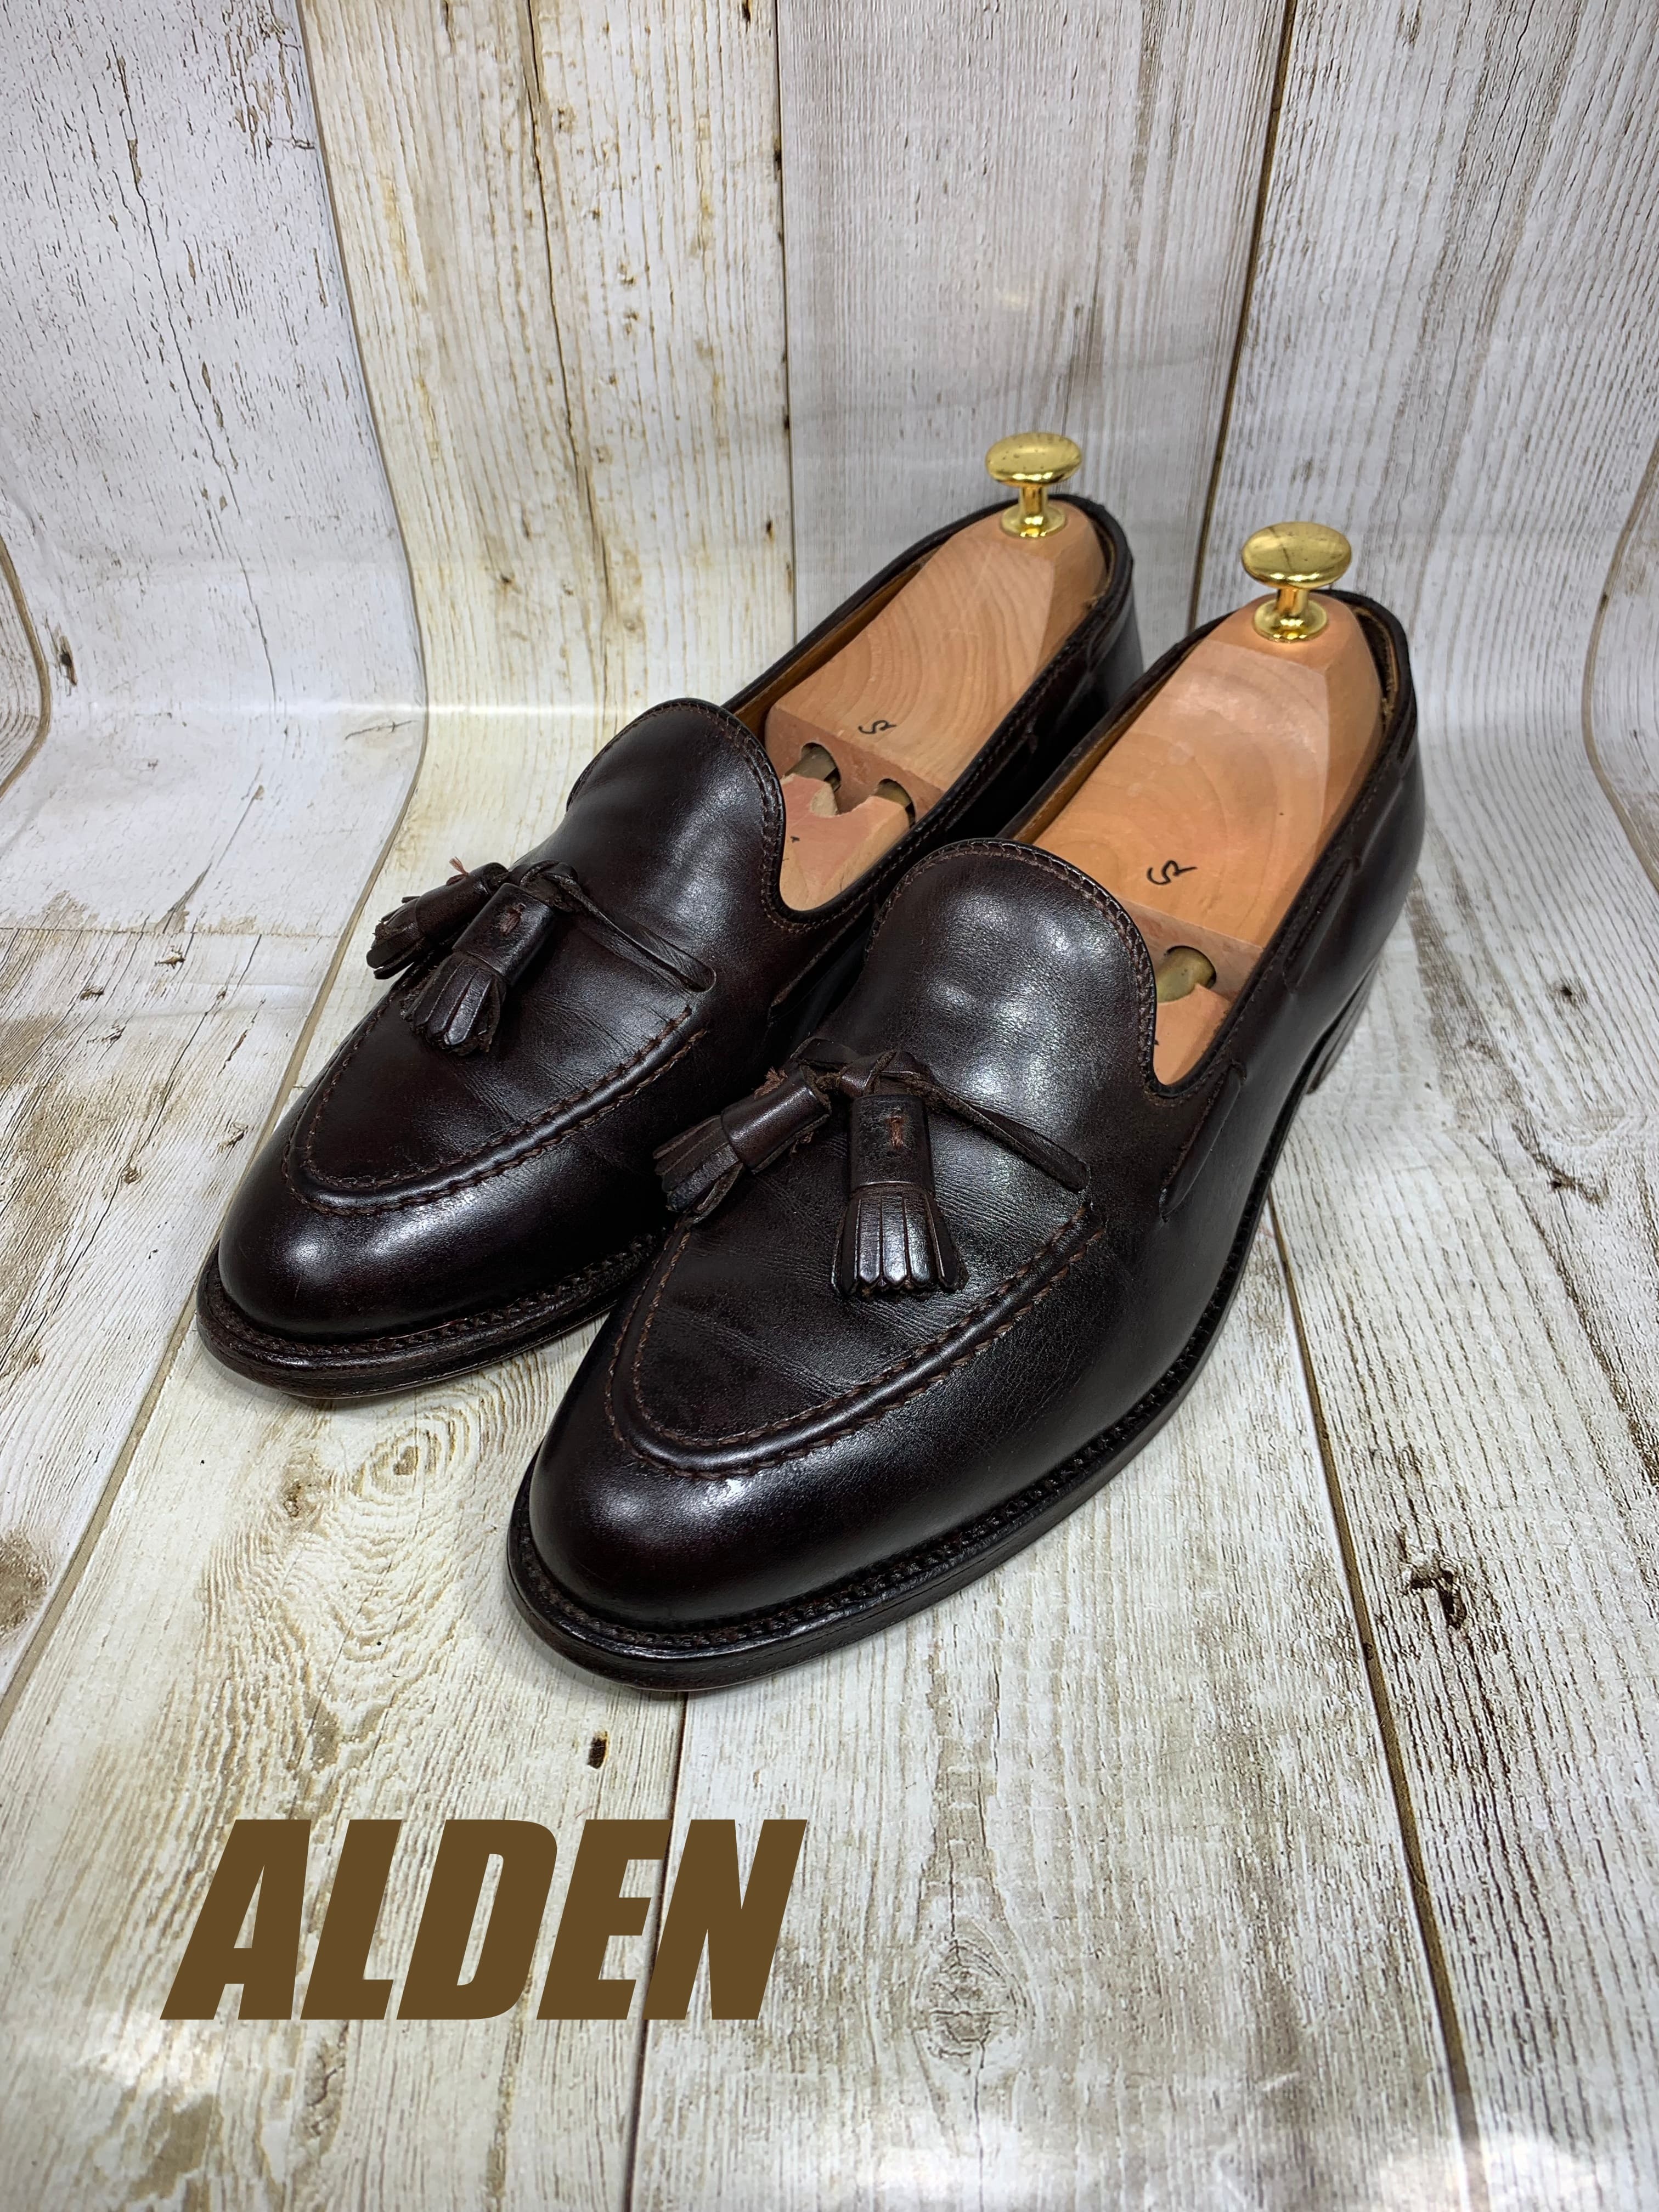 ALDEN オールデン タッセルローファ 561 US7H 25.5cm | 中古靴・革靴・ブーツ通販専門店 DafsMart ダフスマート